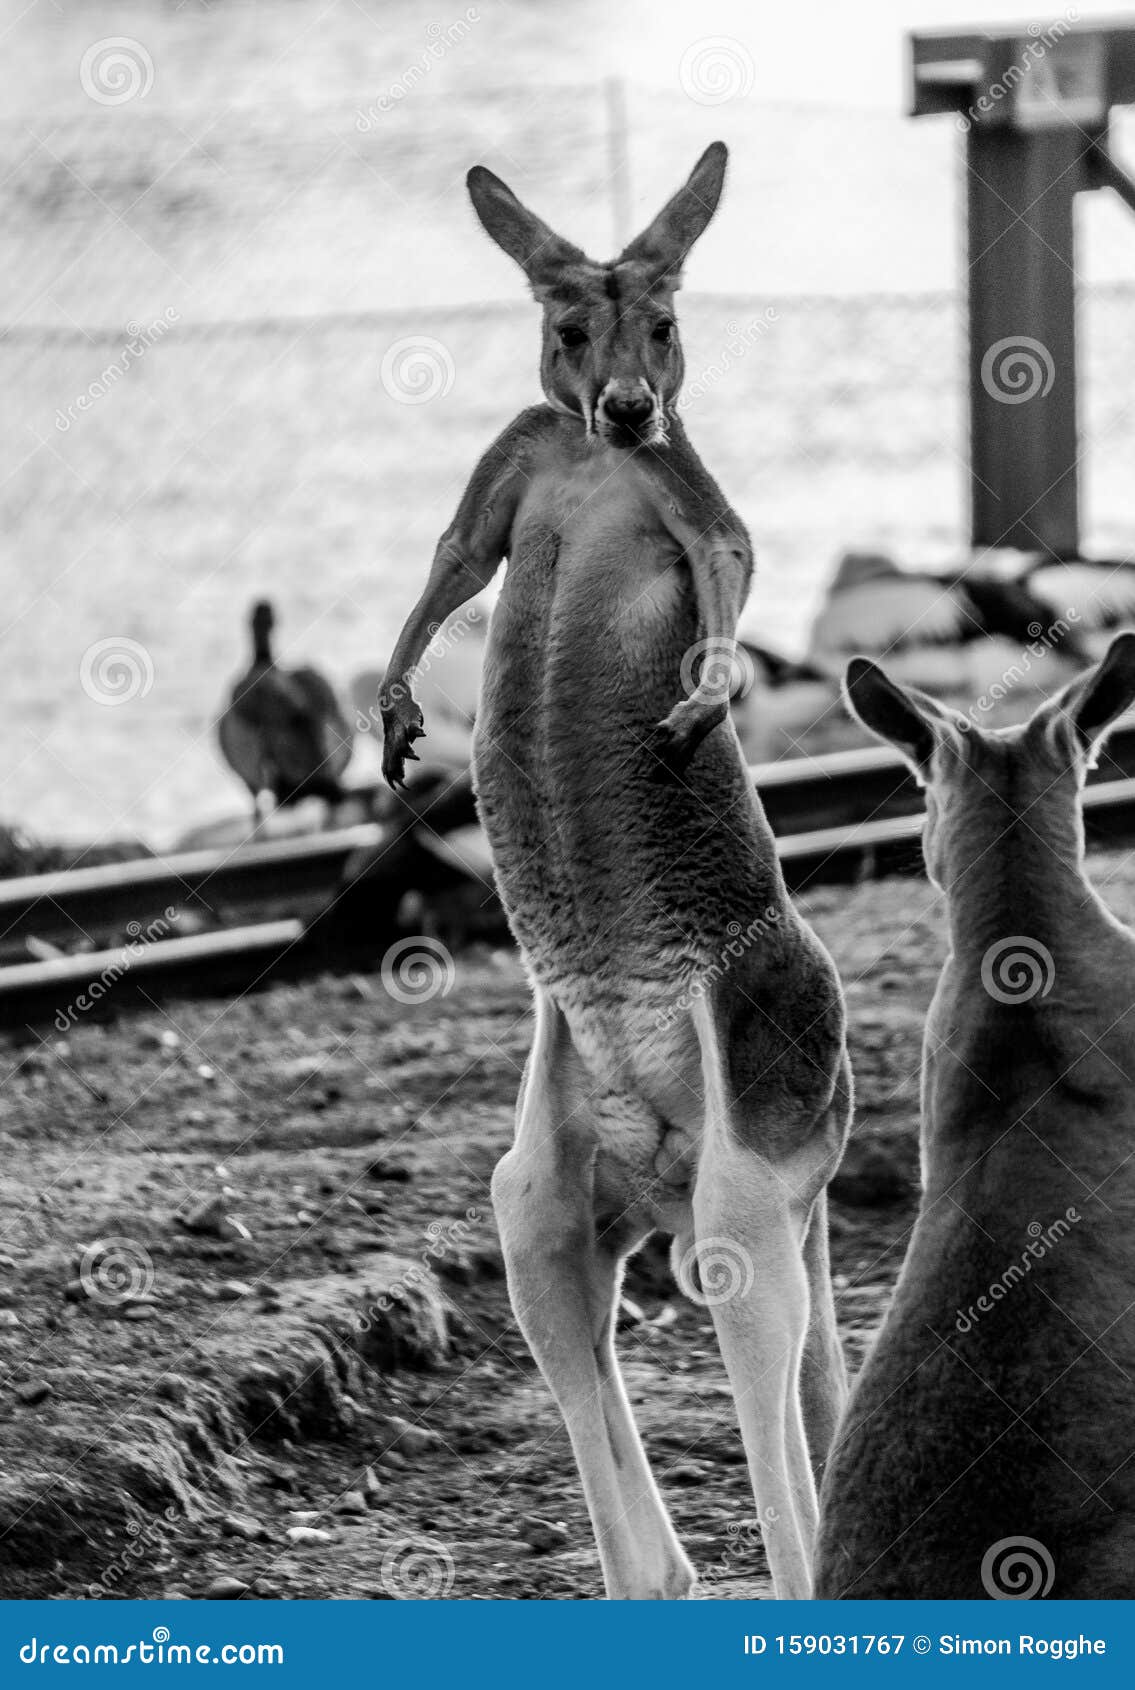 kangaroo assuming the pose of a boxer